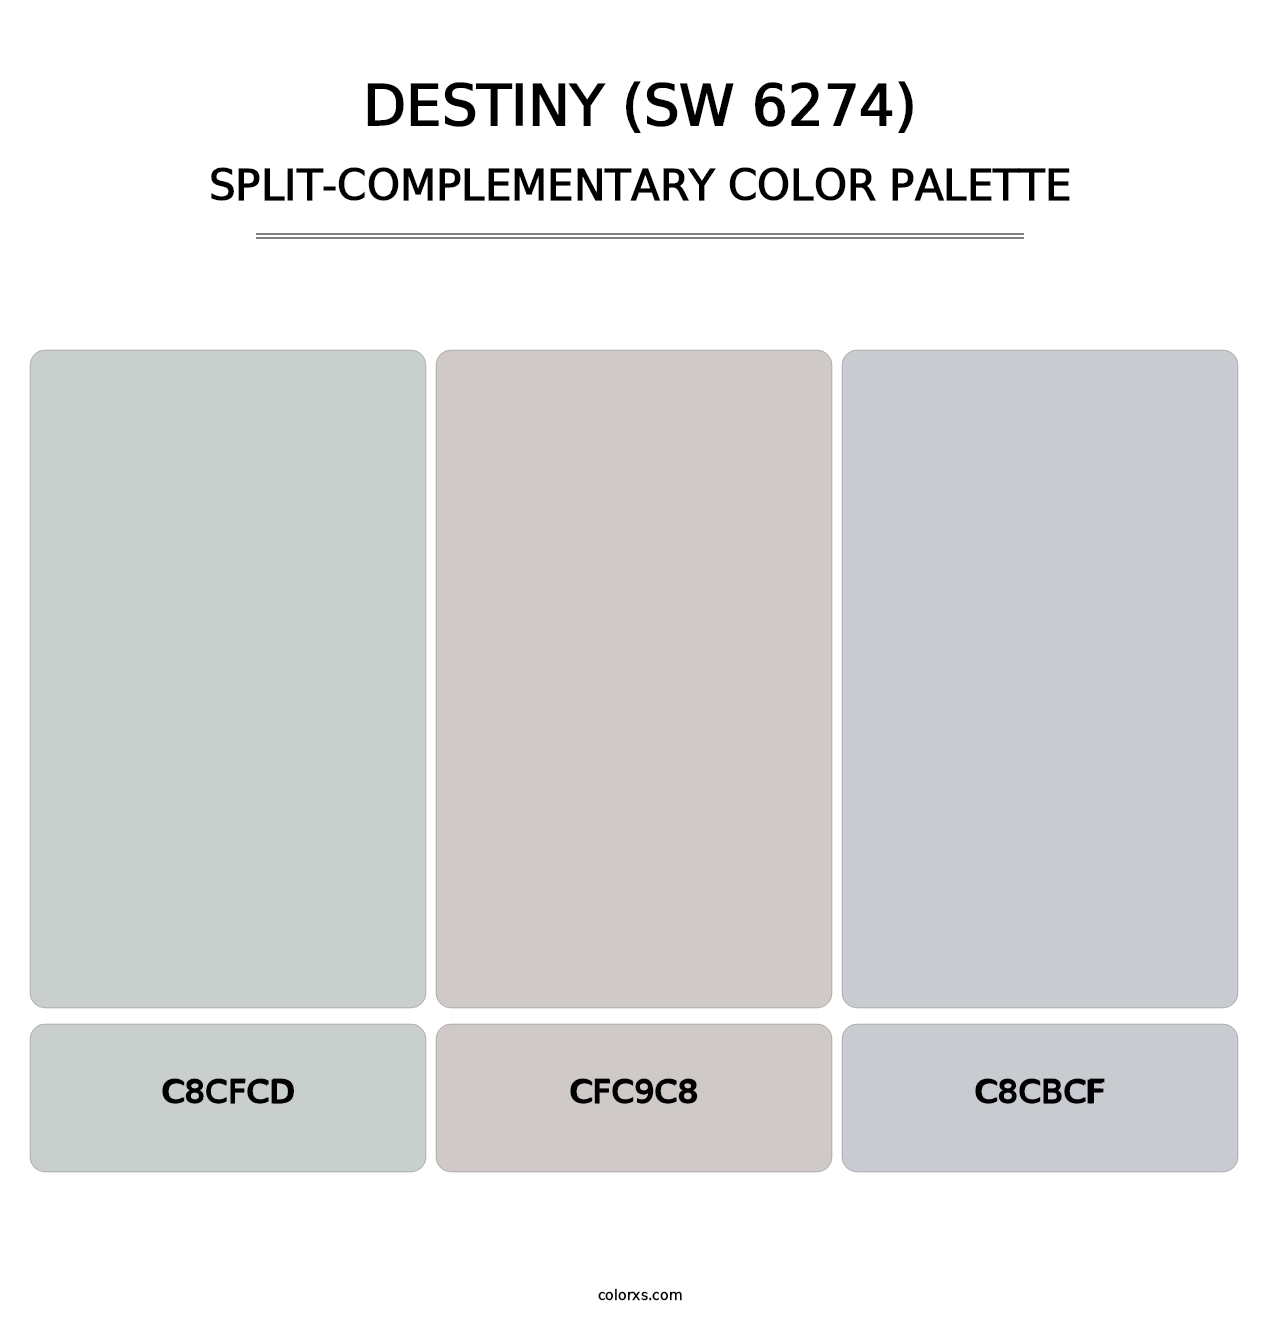 Destiny (SW 6274) - Split-Complementary Color Palette